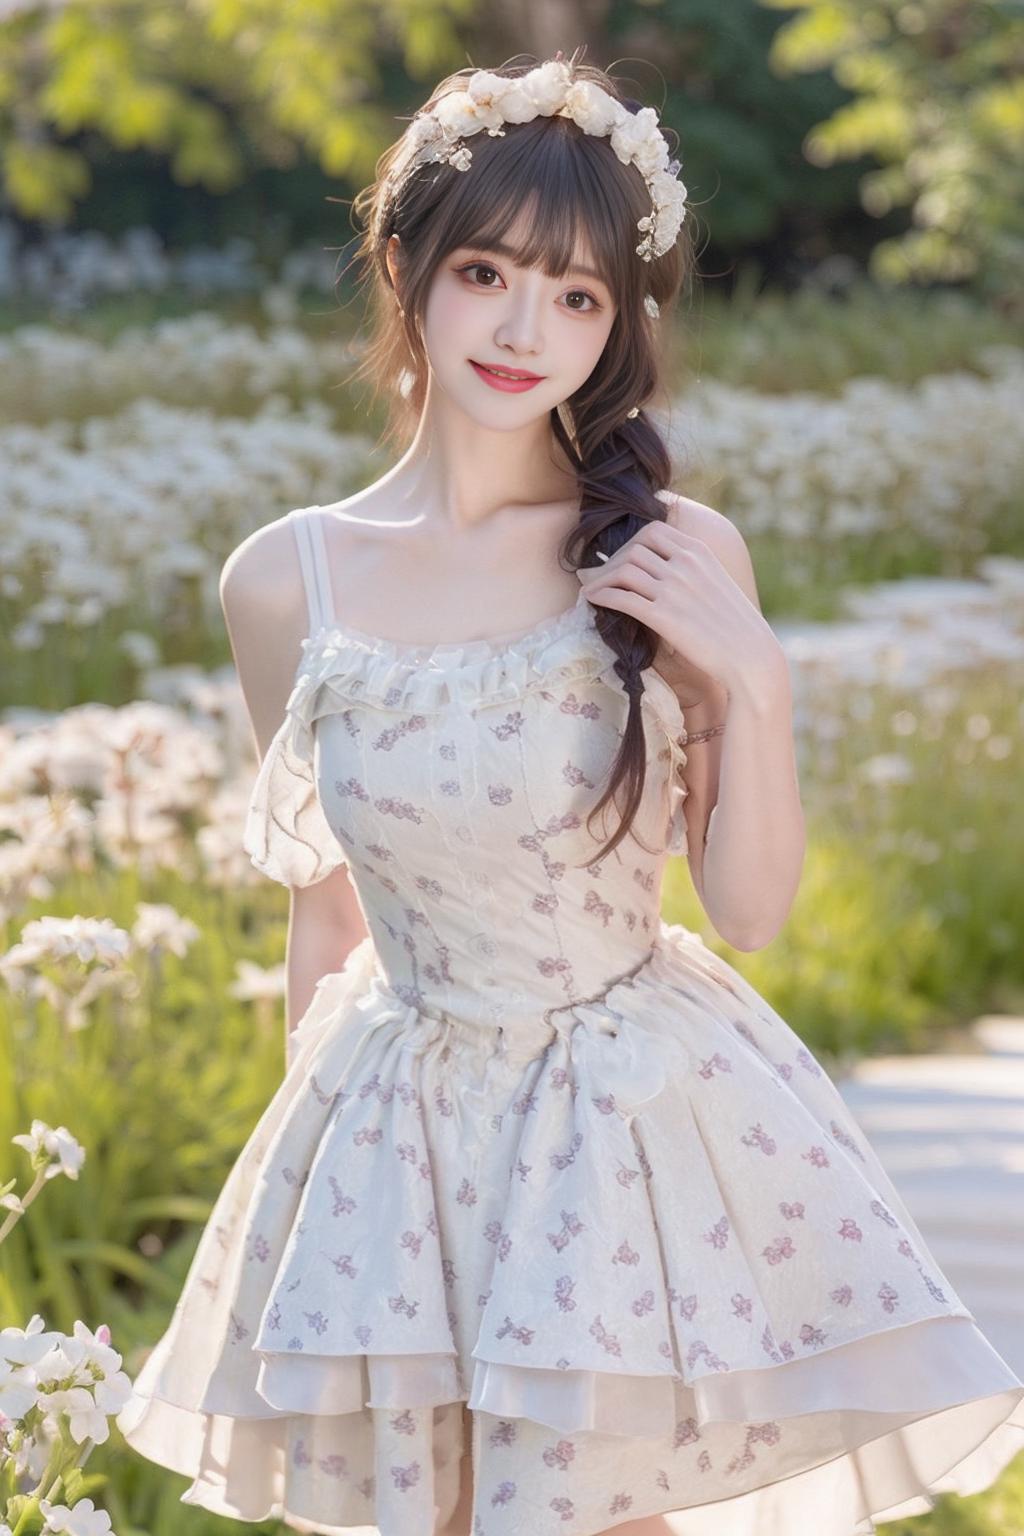 Flower dress image by cyberAngel_